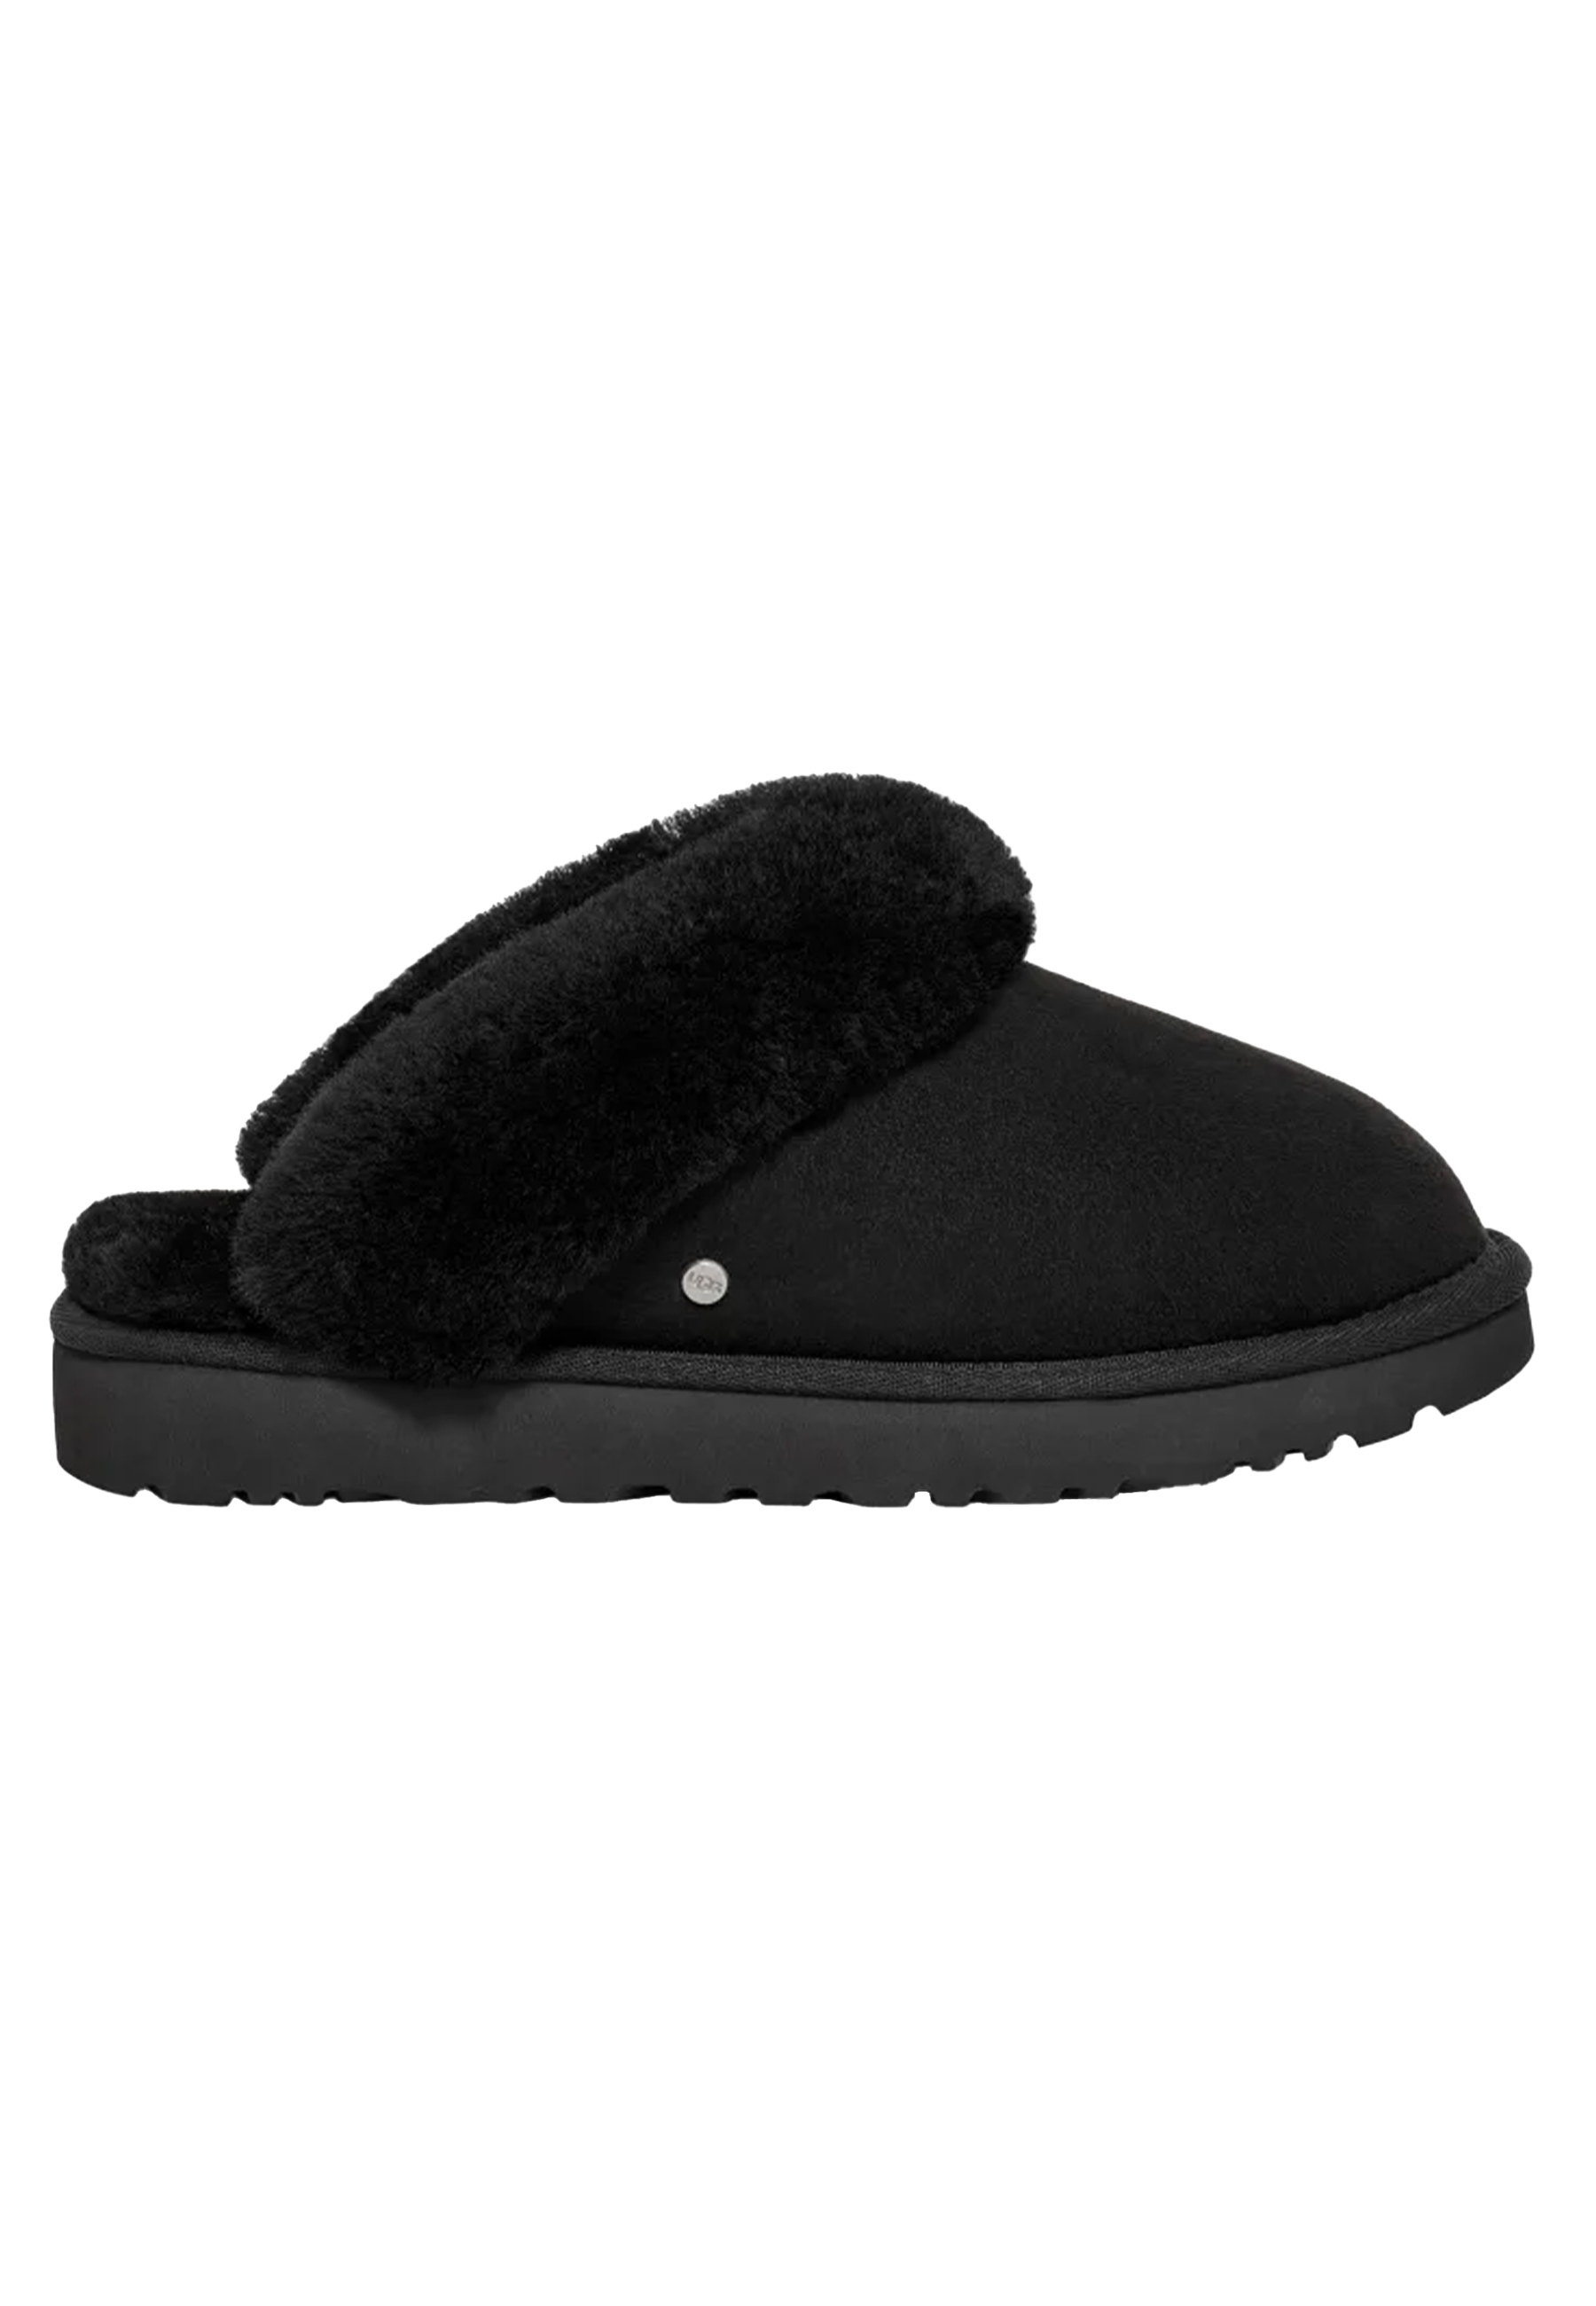 Ugg Classic ii slippers zwart Dames maat 40